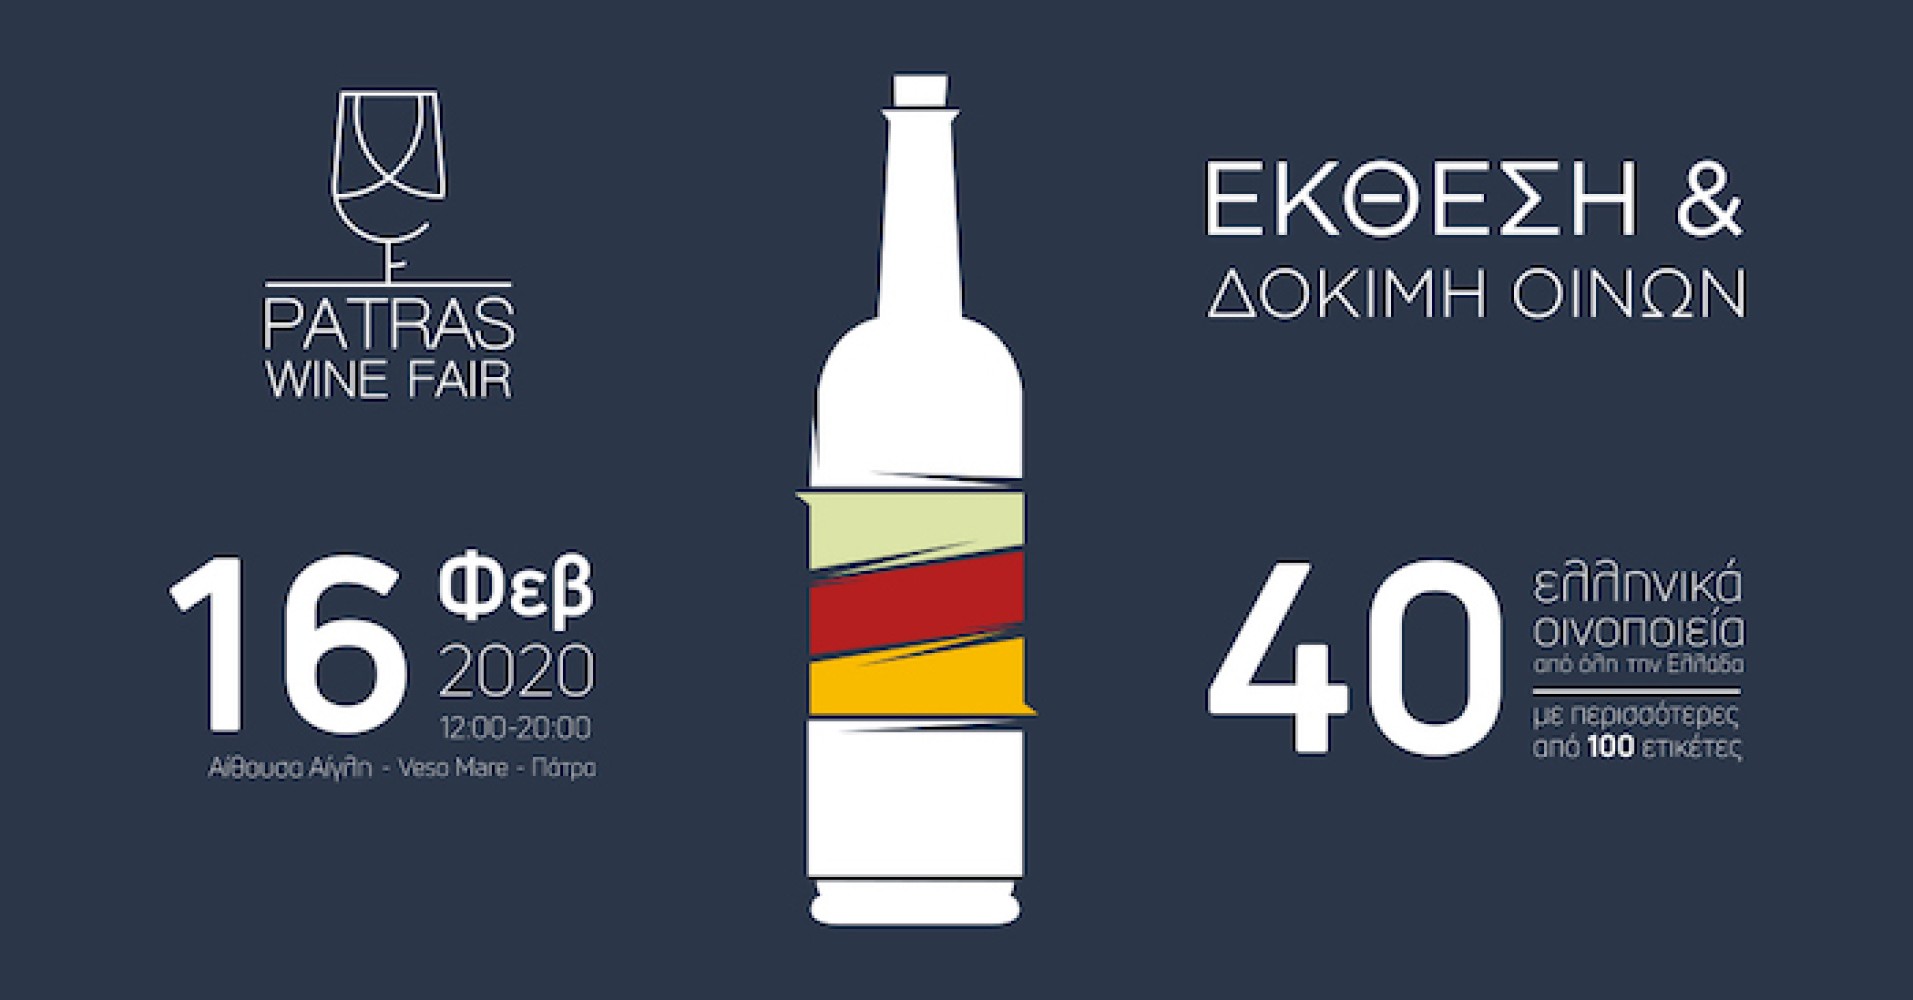 Το ΙΕΚ ΔΕΛΤΑ 360 Πάτρας μαγειρεύει για το Patras Wine Fair